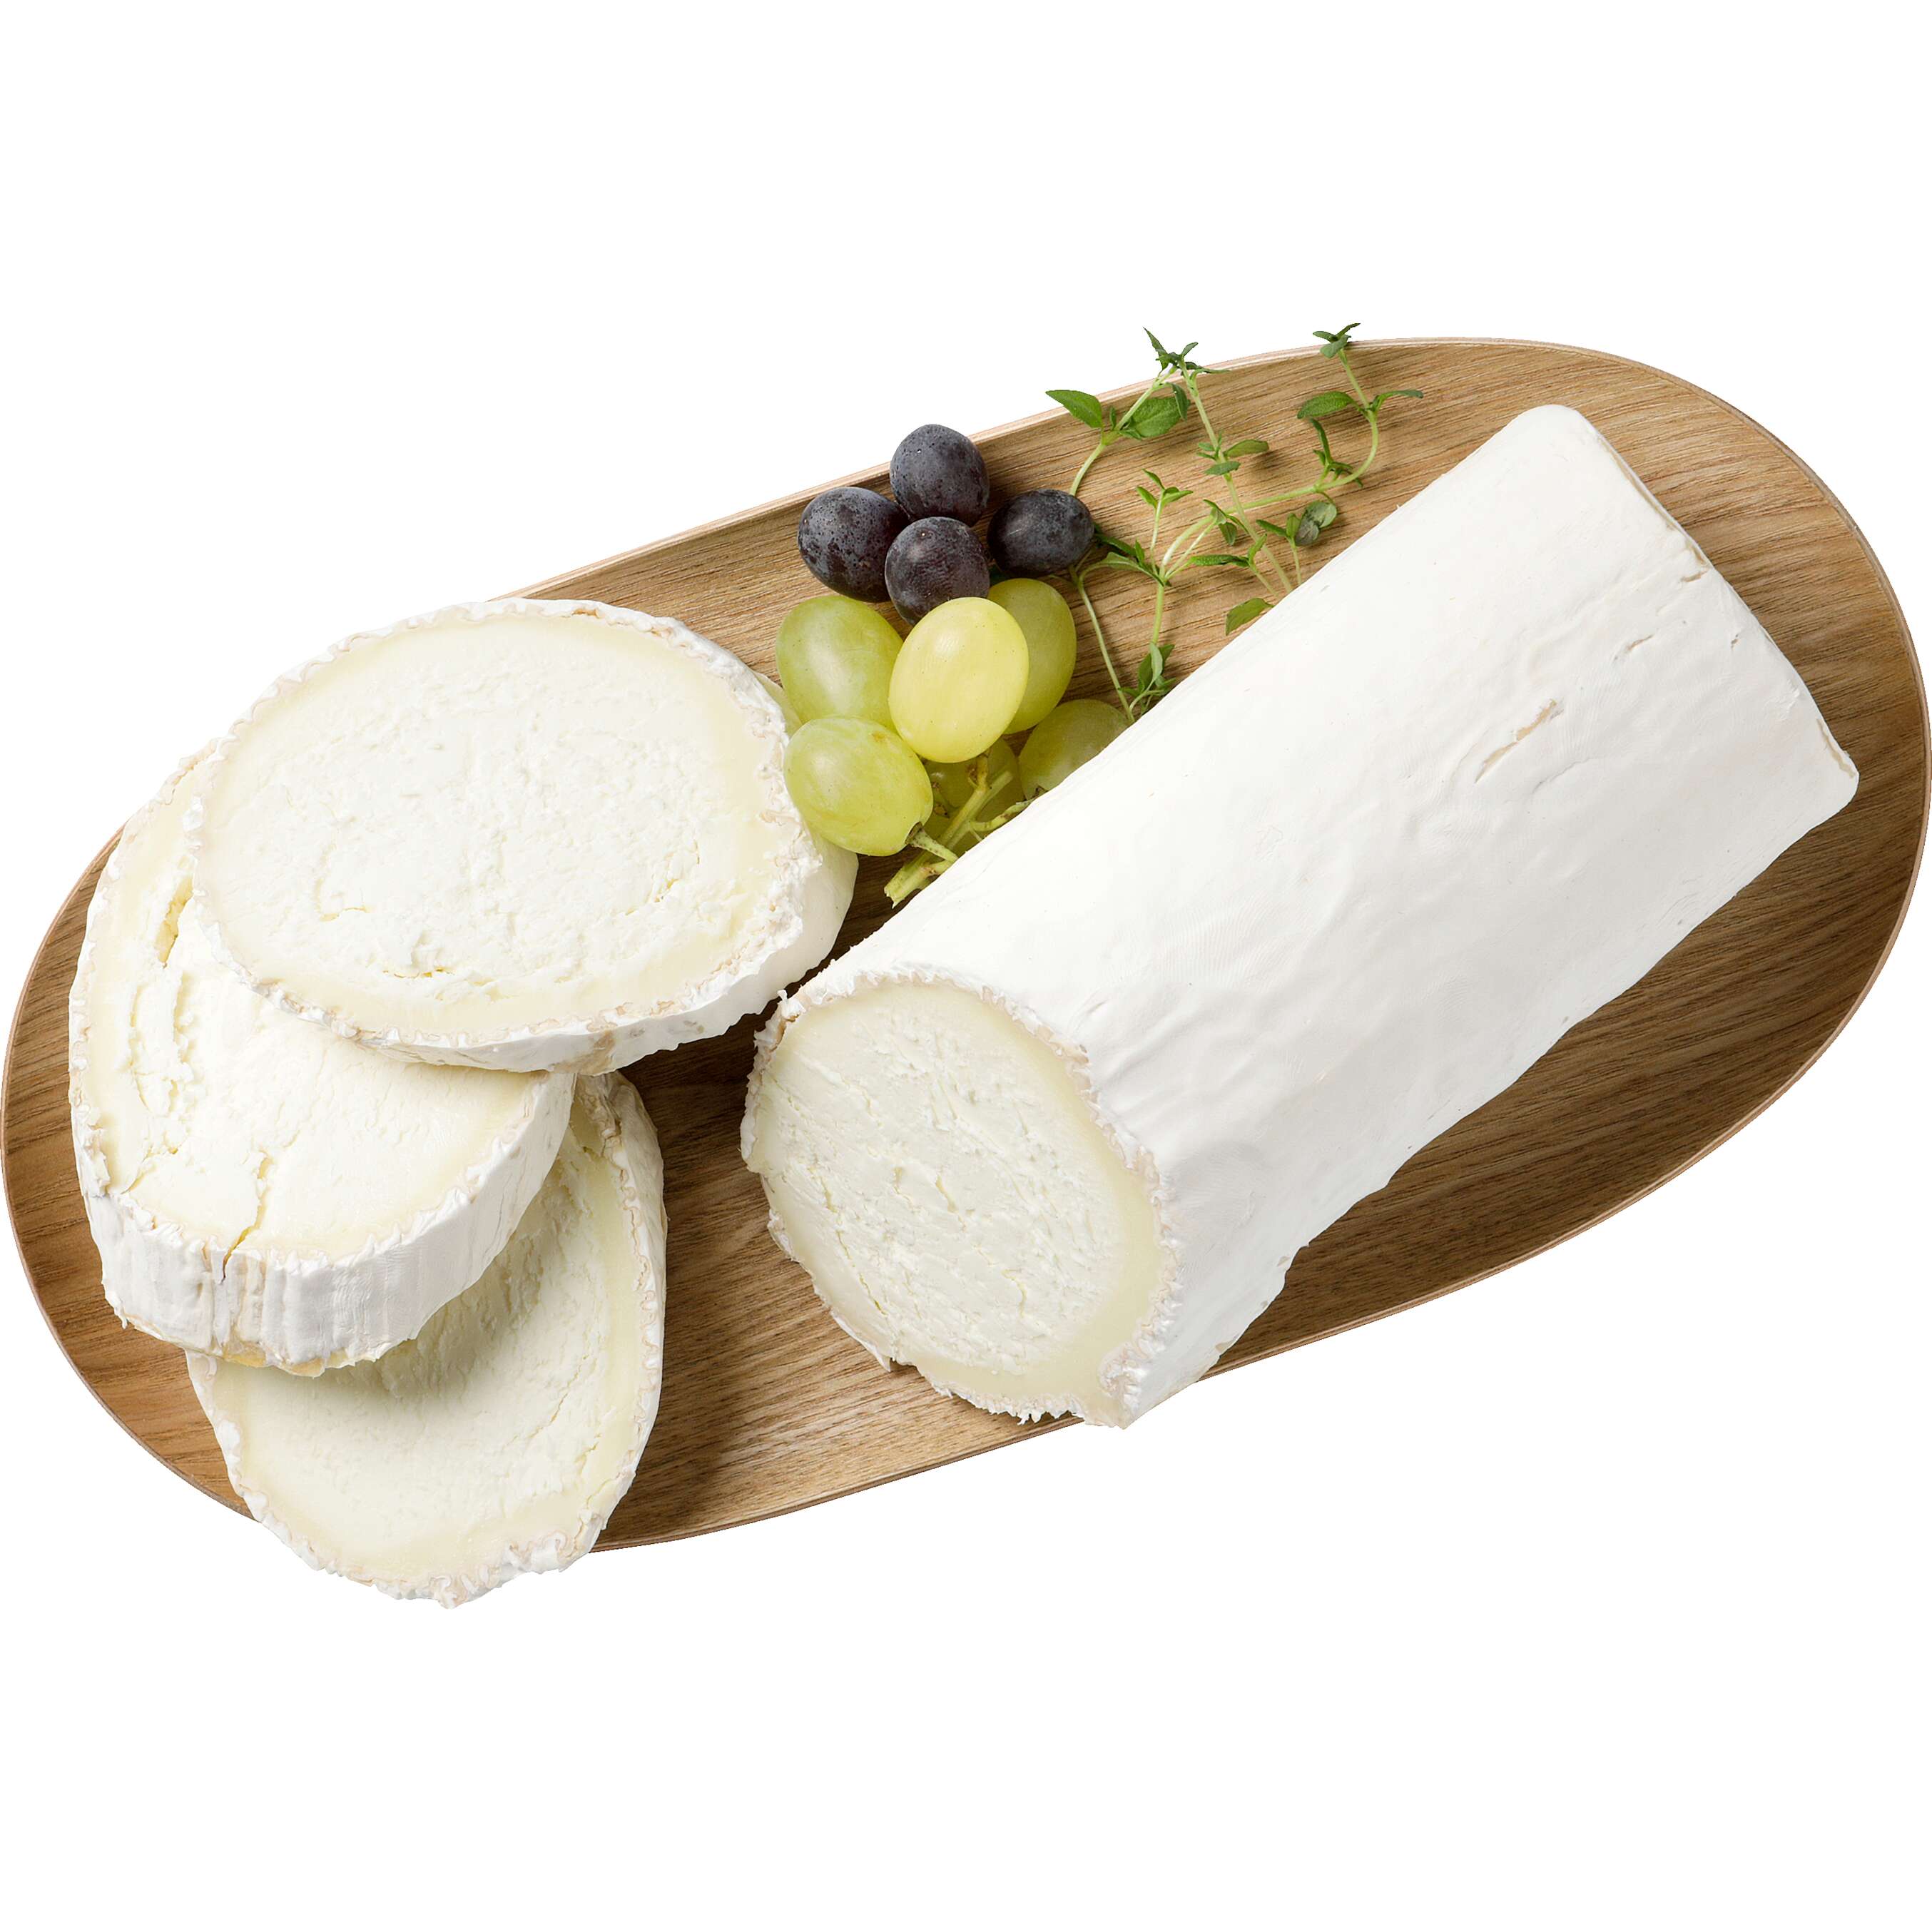 Zobrazit nabídku Ovčí sýr s bílou plísní na povrchu